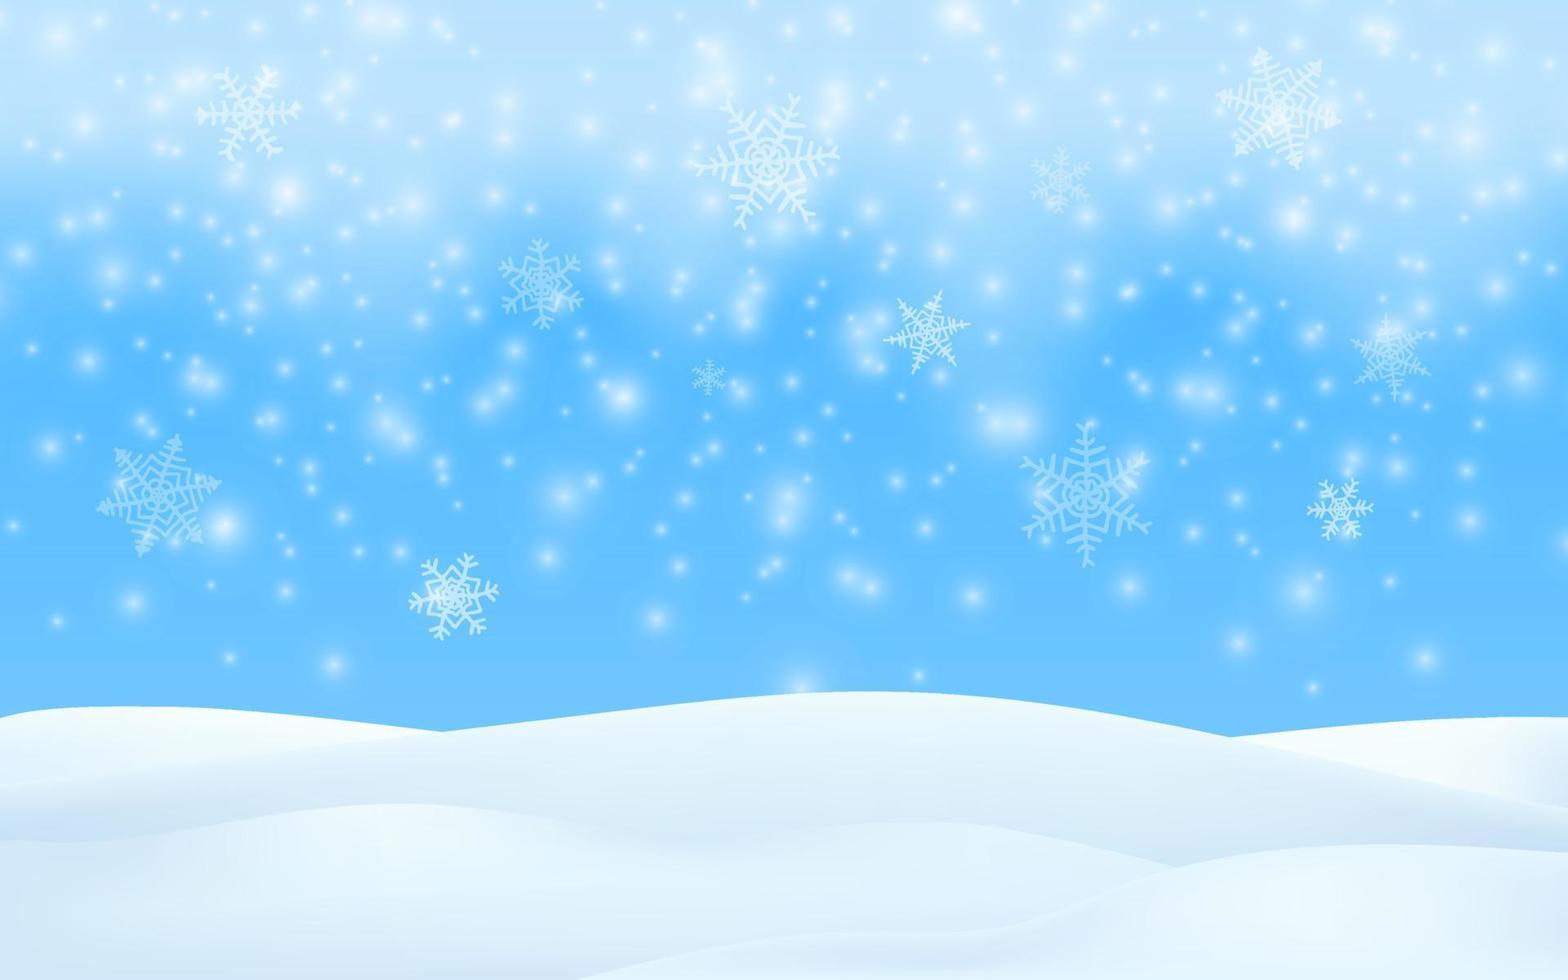 Szene der Wintersaison. Schneehintergrund der frohen Weihnachten. Vektor-3D-Illustration Glühende Schneeflocken fallen. Winterlandschaft, blauer Himmel, Schneesturm. leerer raum für produktdesign. vektor